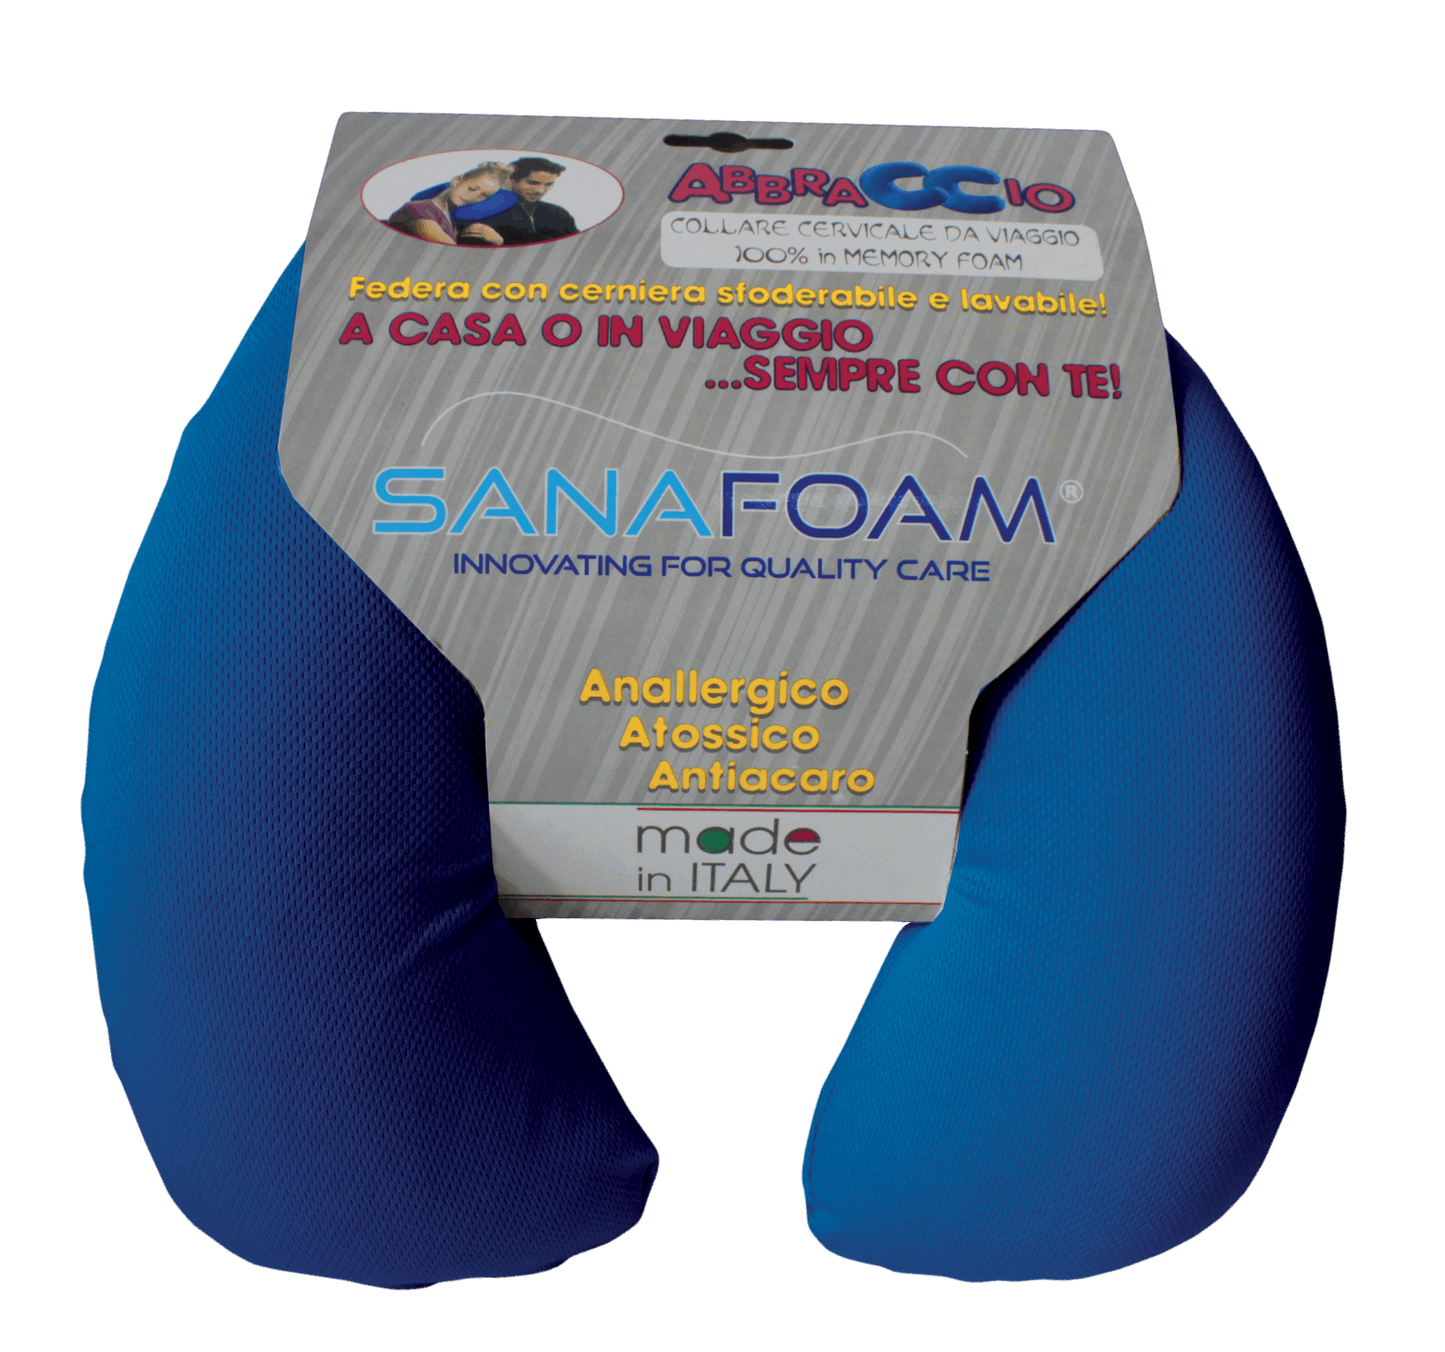 Collare Cervicale Memory Foam - SANAFOAM - Confezione da 2 - I migliori prodotti Made in Italy da Fiera di Monza Shop - Solo 36€! Acquista subito su Fiera di Monza Shop!